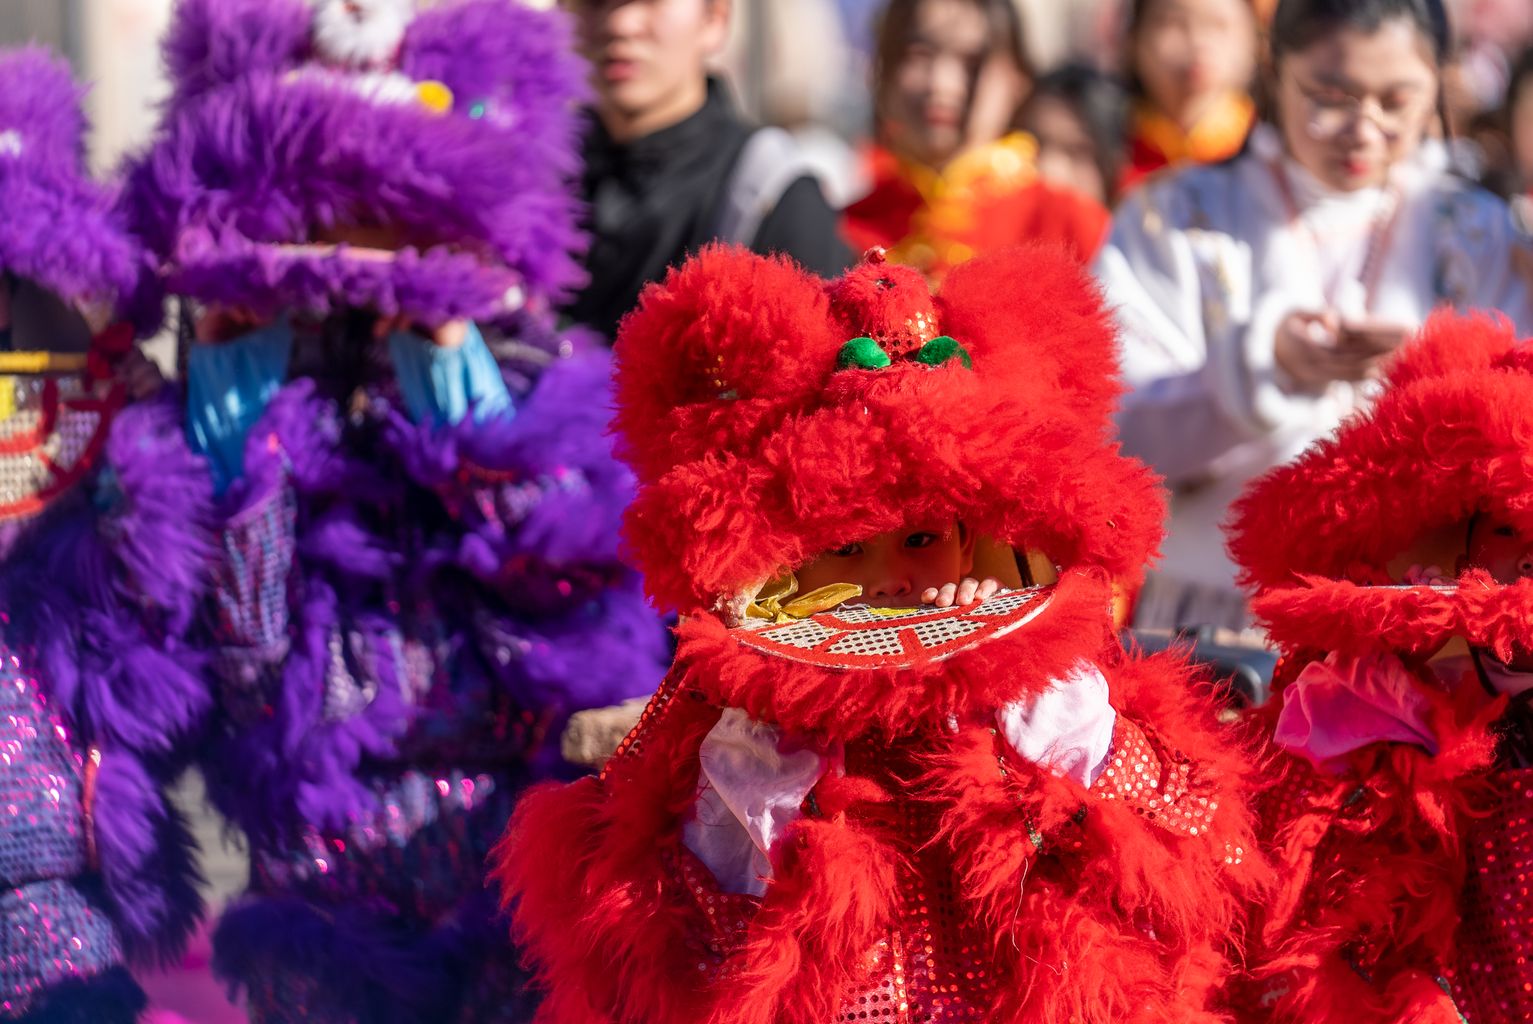 Un infant vestit de lleó a la celebració de l’any nou xinès.